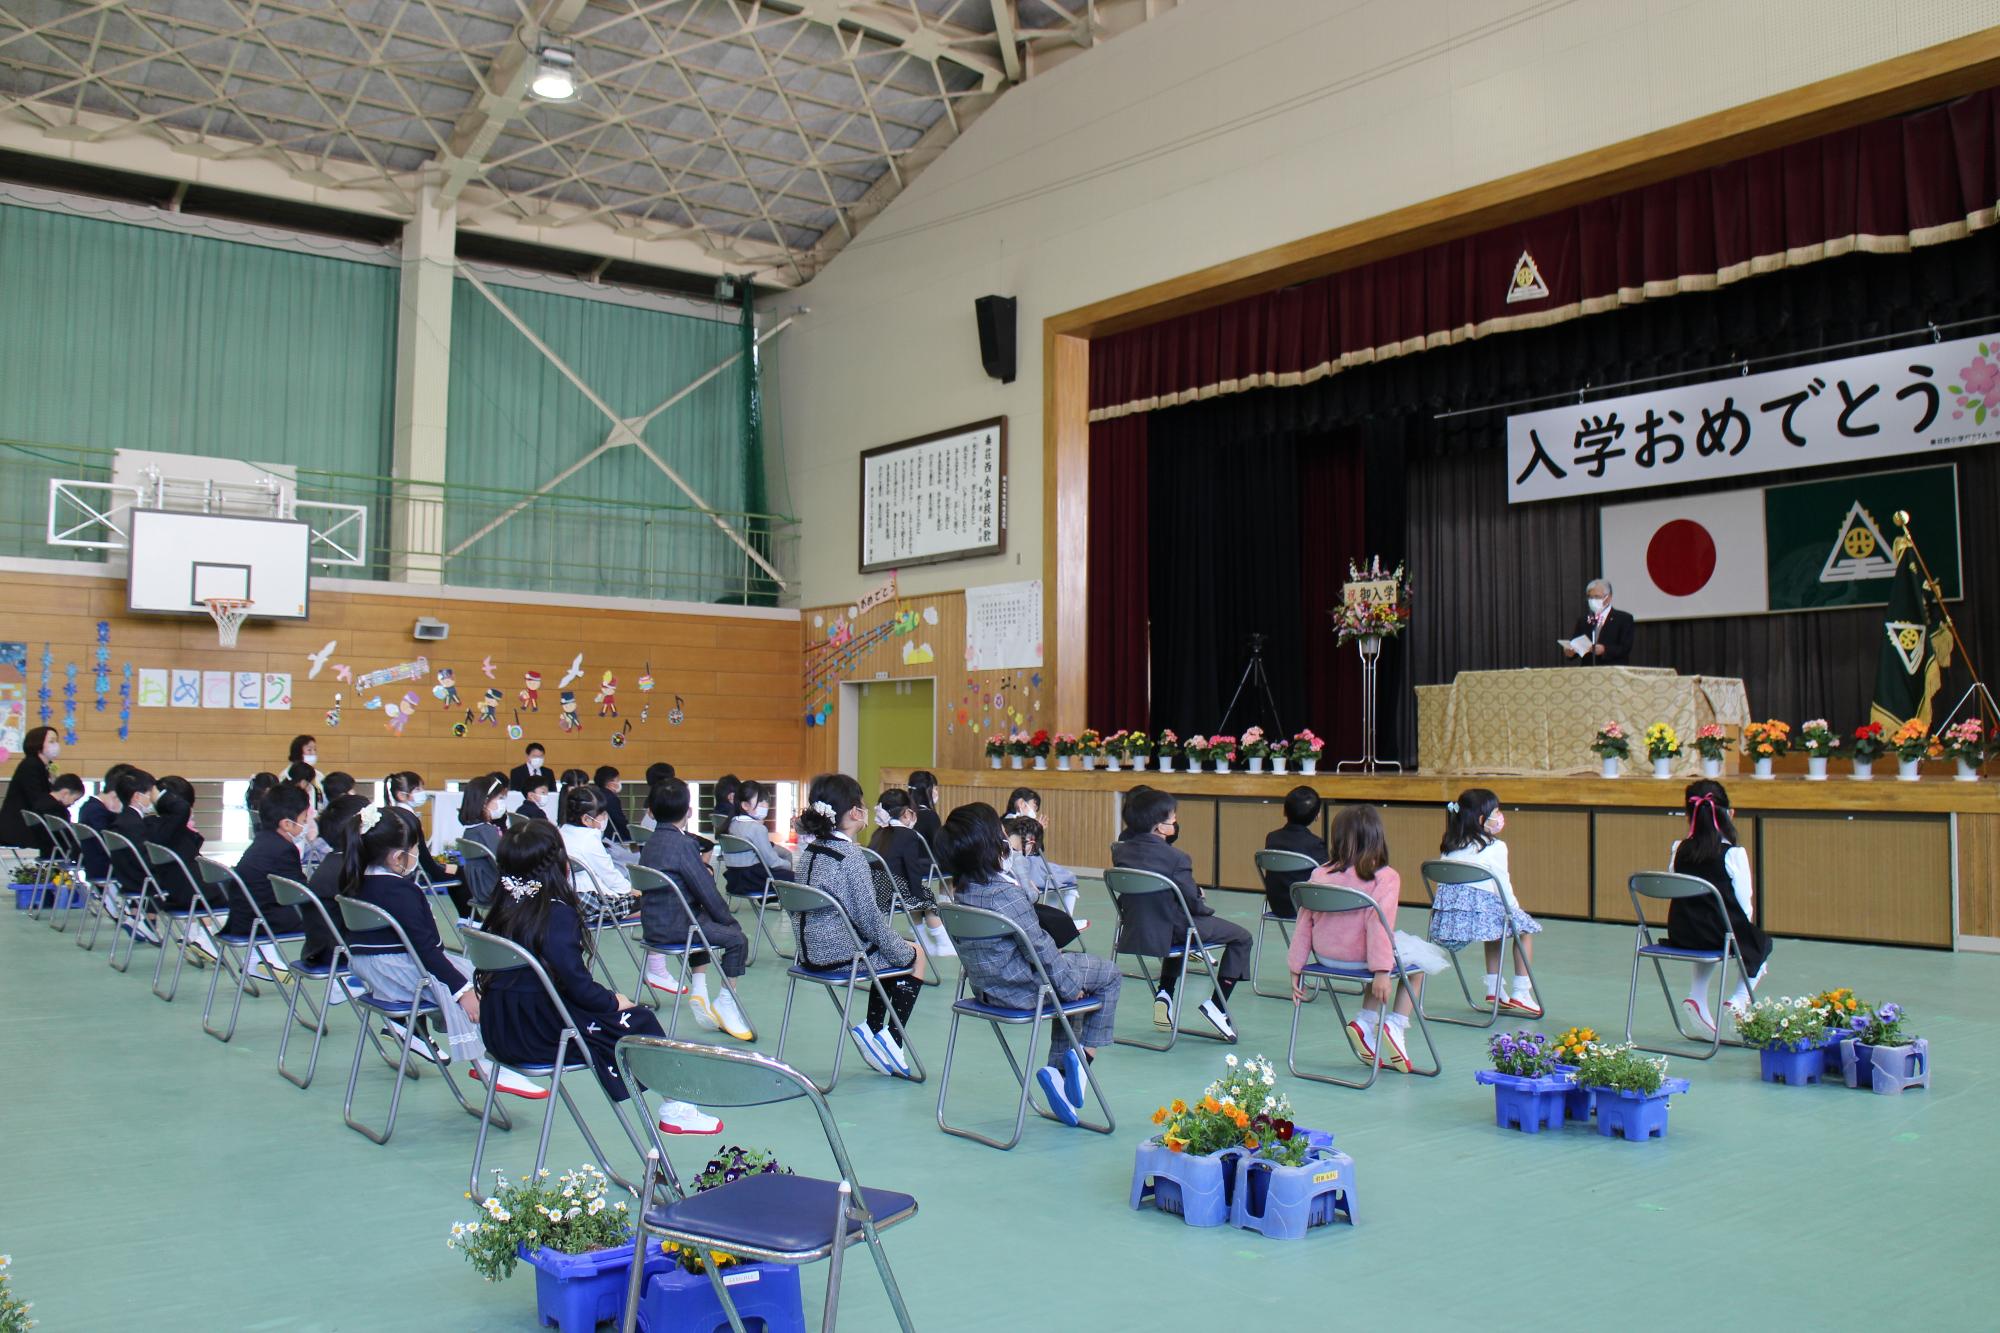 入学式のようす　みんなきちんと座って話を聞いています。